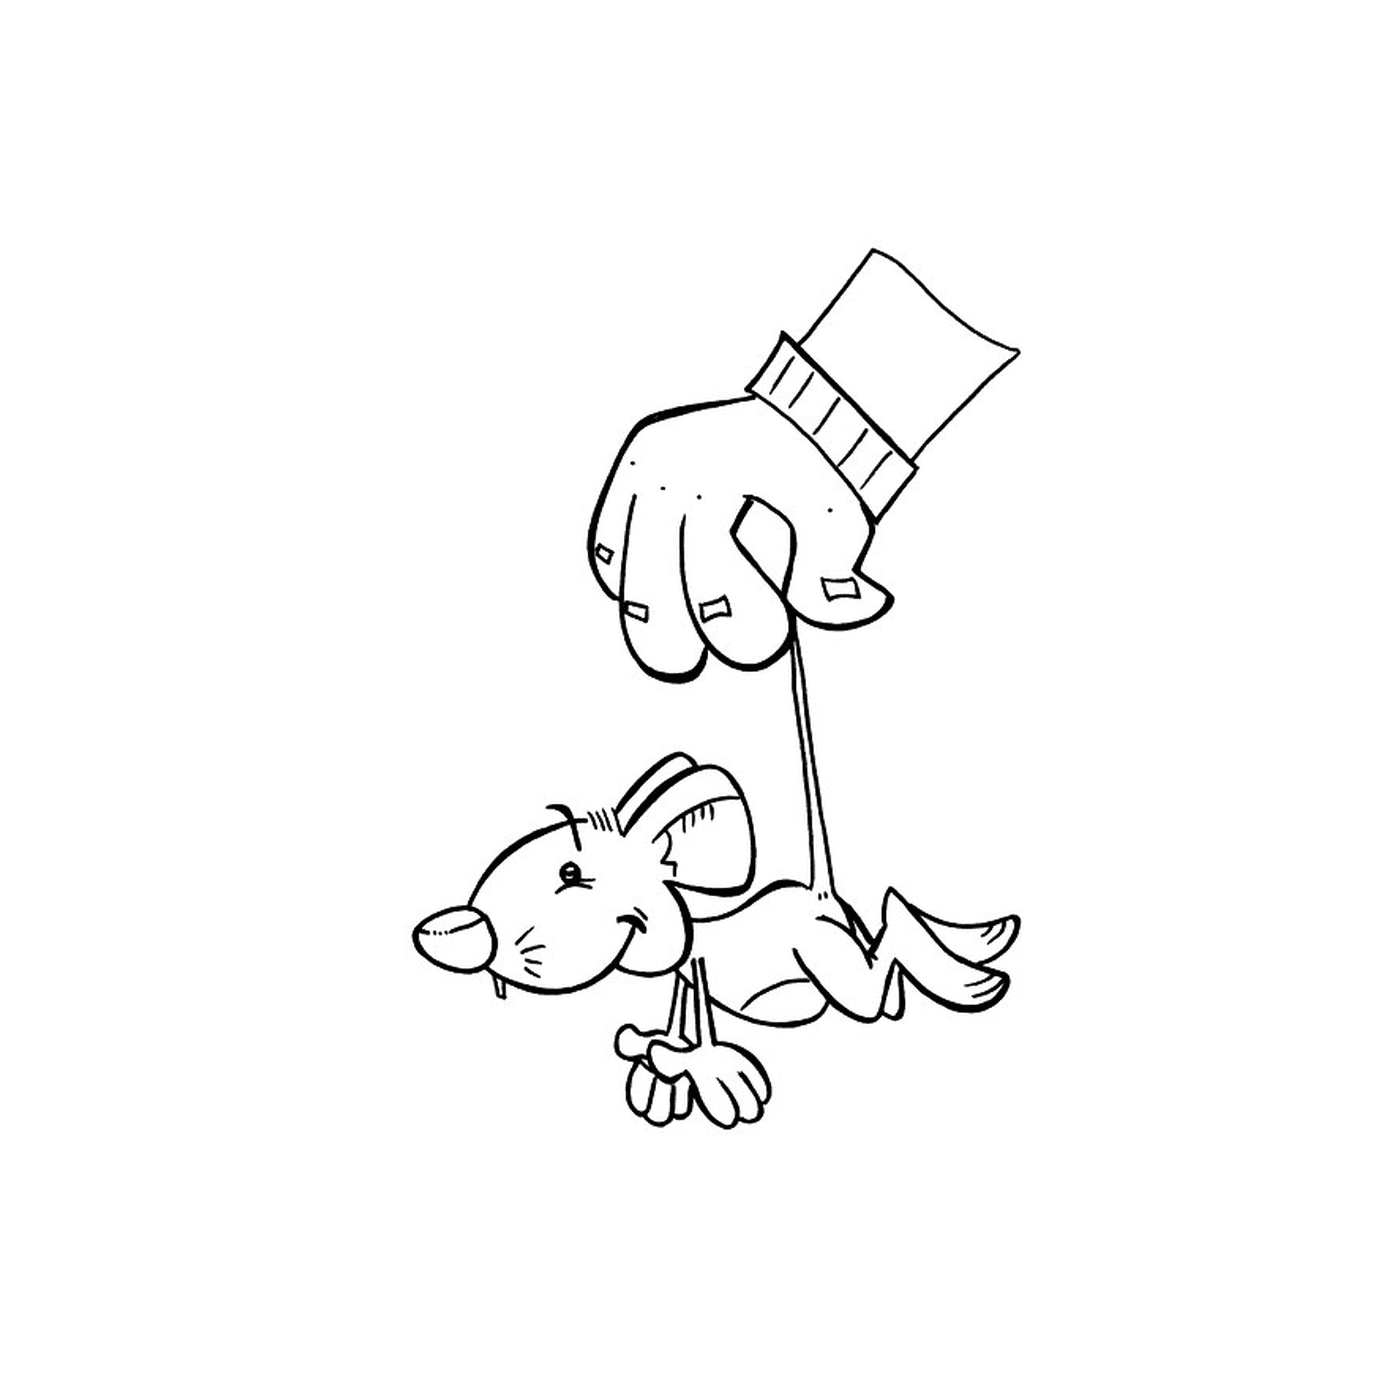  Una mano sosteniendo un palo con un perro 